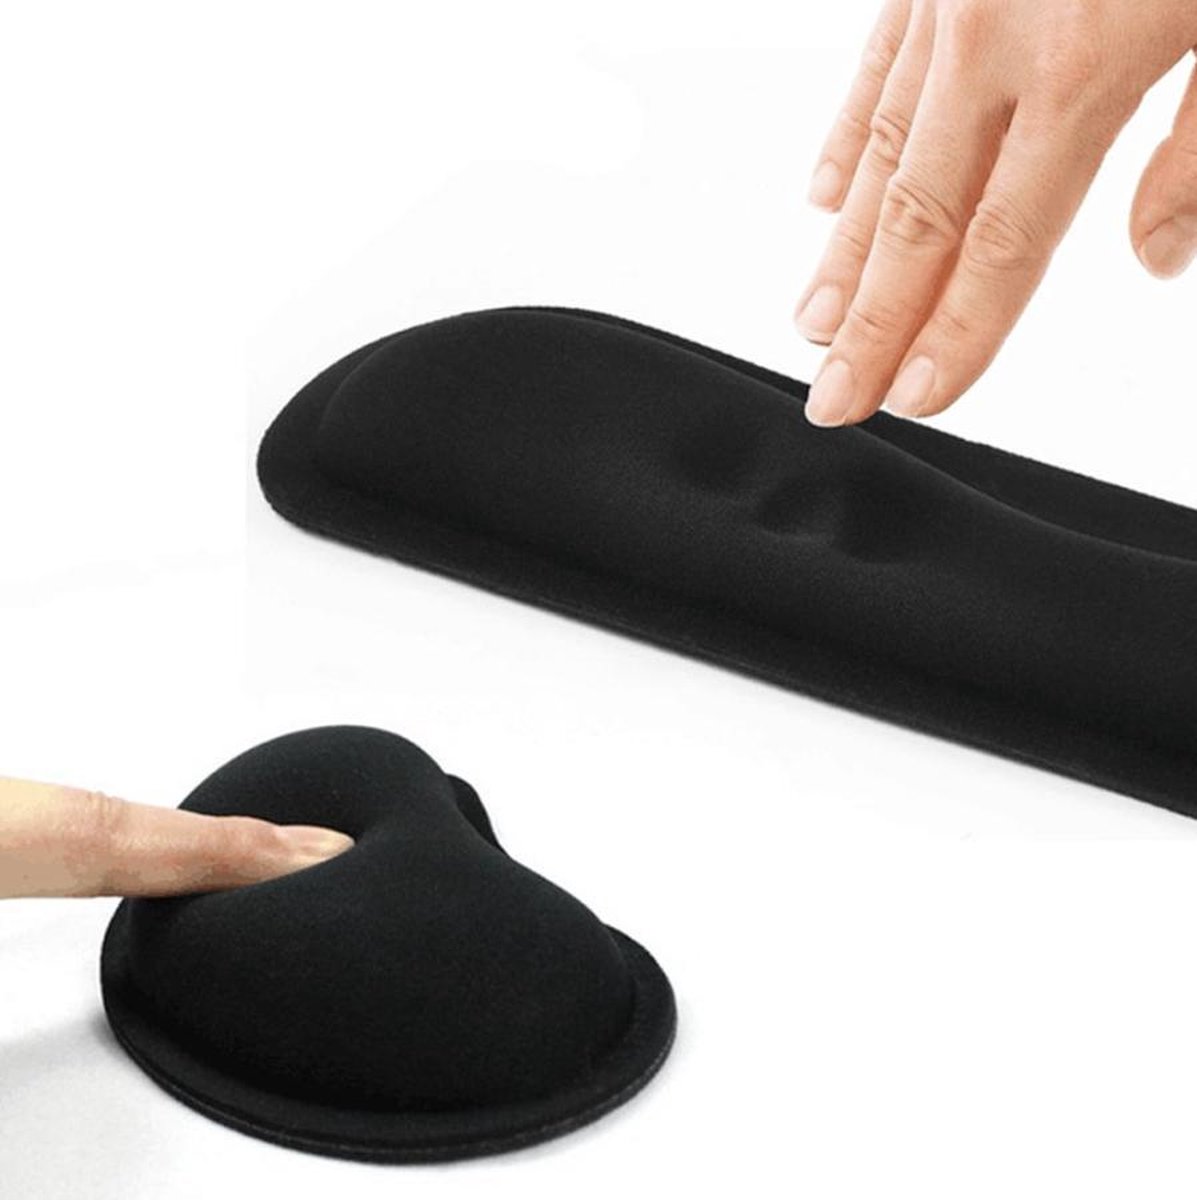 Gel muismat polssteun - Toetsenbord - anti-slip - Muis - 2 STUKS - voor draadloze muis - ergonomische muismat